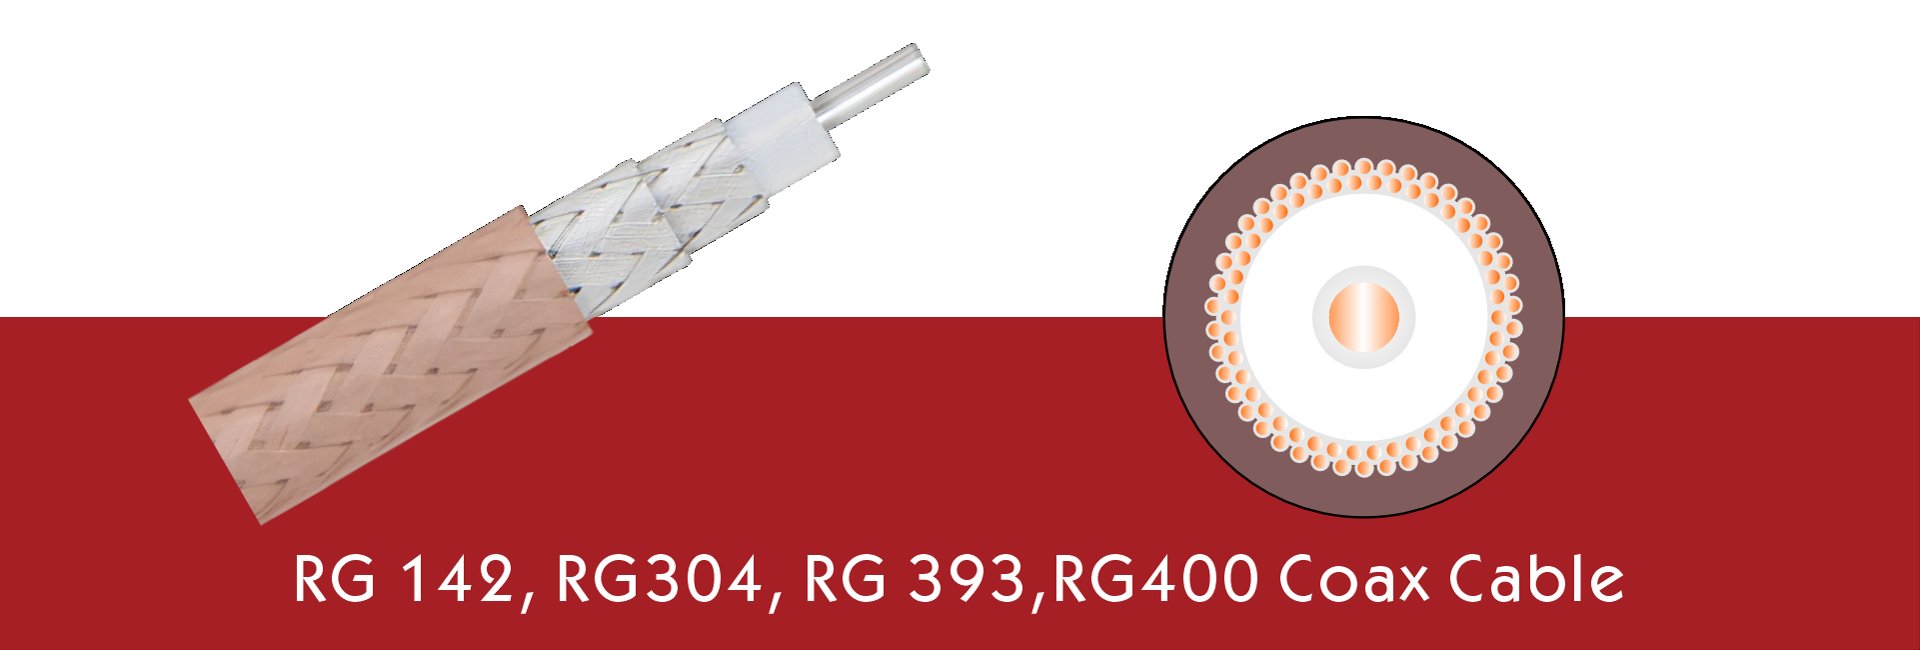 RG 142, RG304, RG 393,RG400 Coax Cable